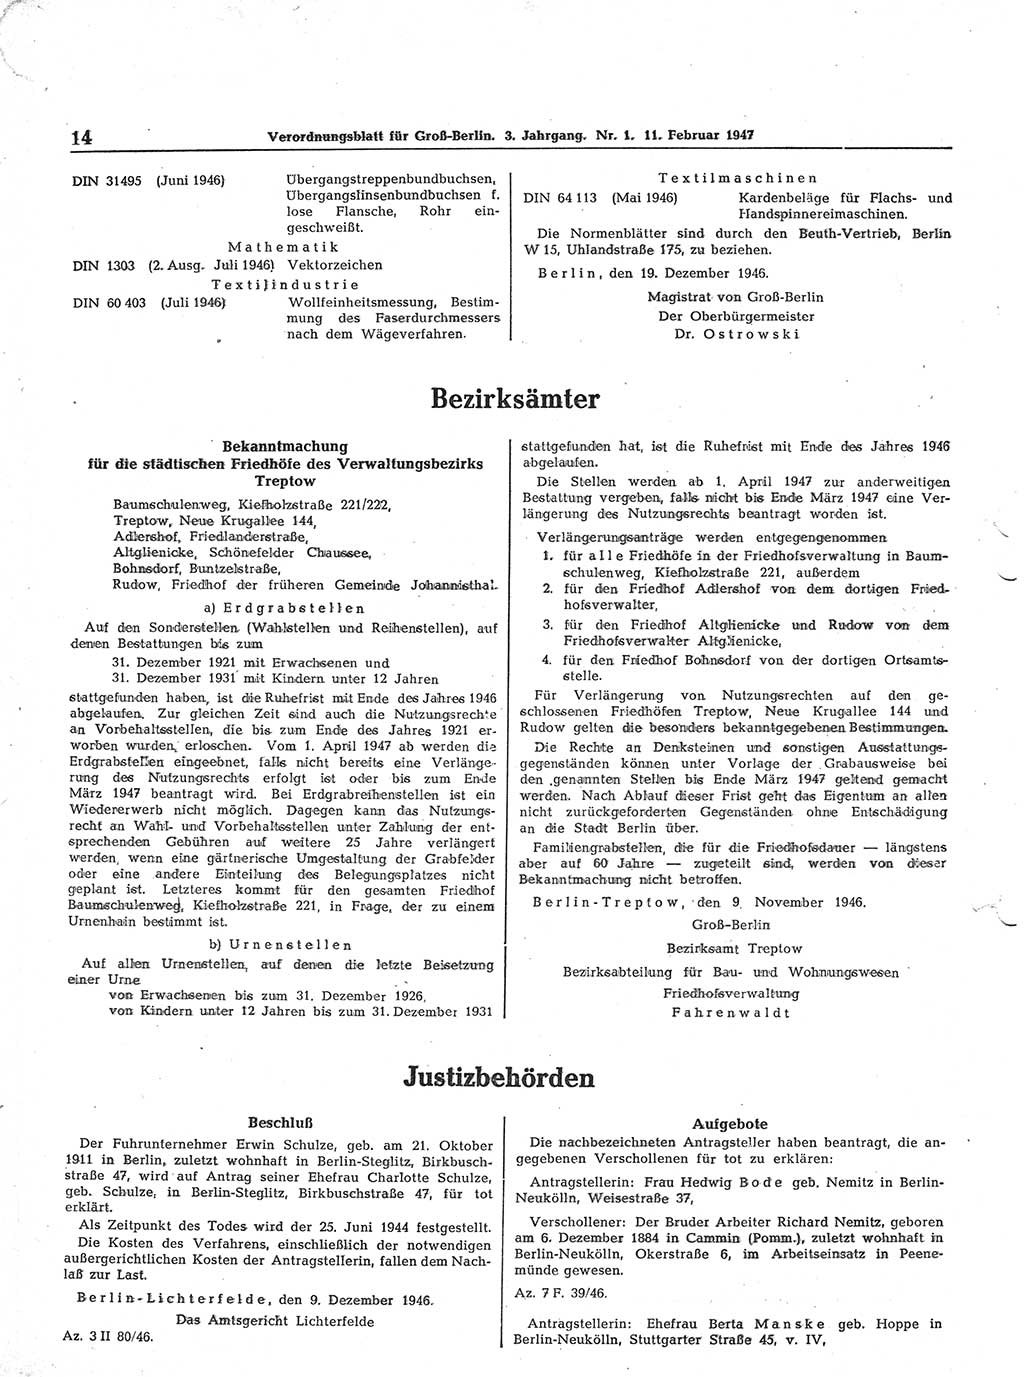 Verordnungsblatt (VOBl.) für Groß-Berlin 1947, Seite 14 (VOBl. Bln. 1947, S. 14)